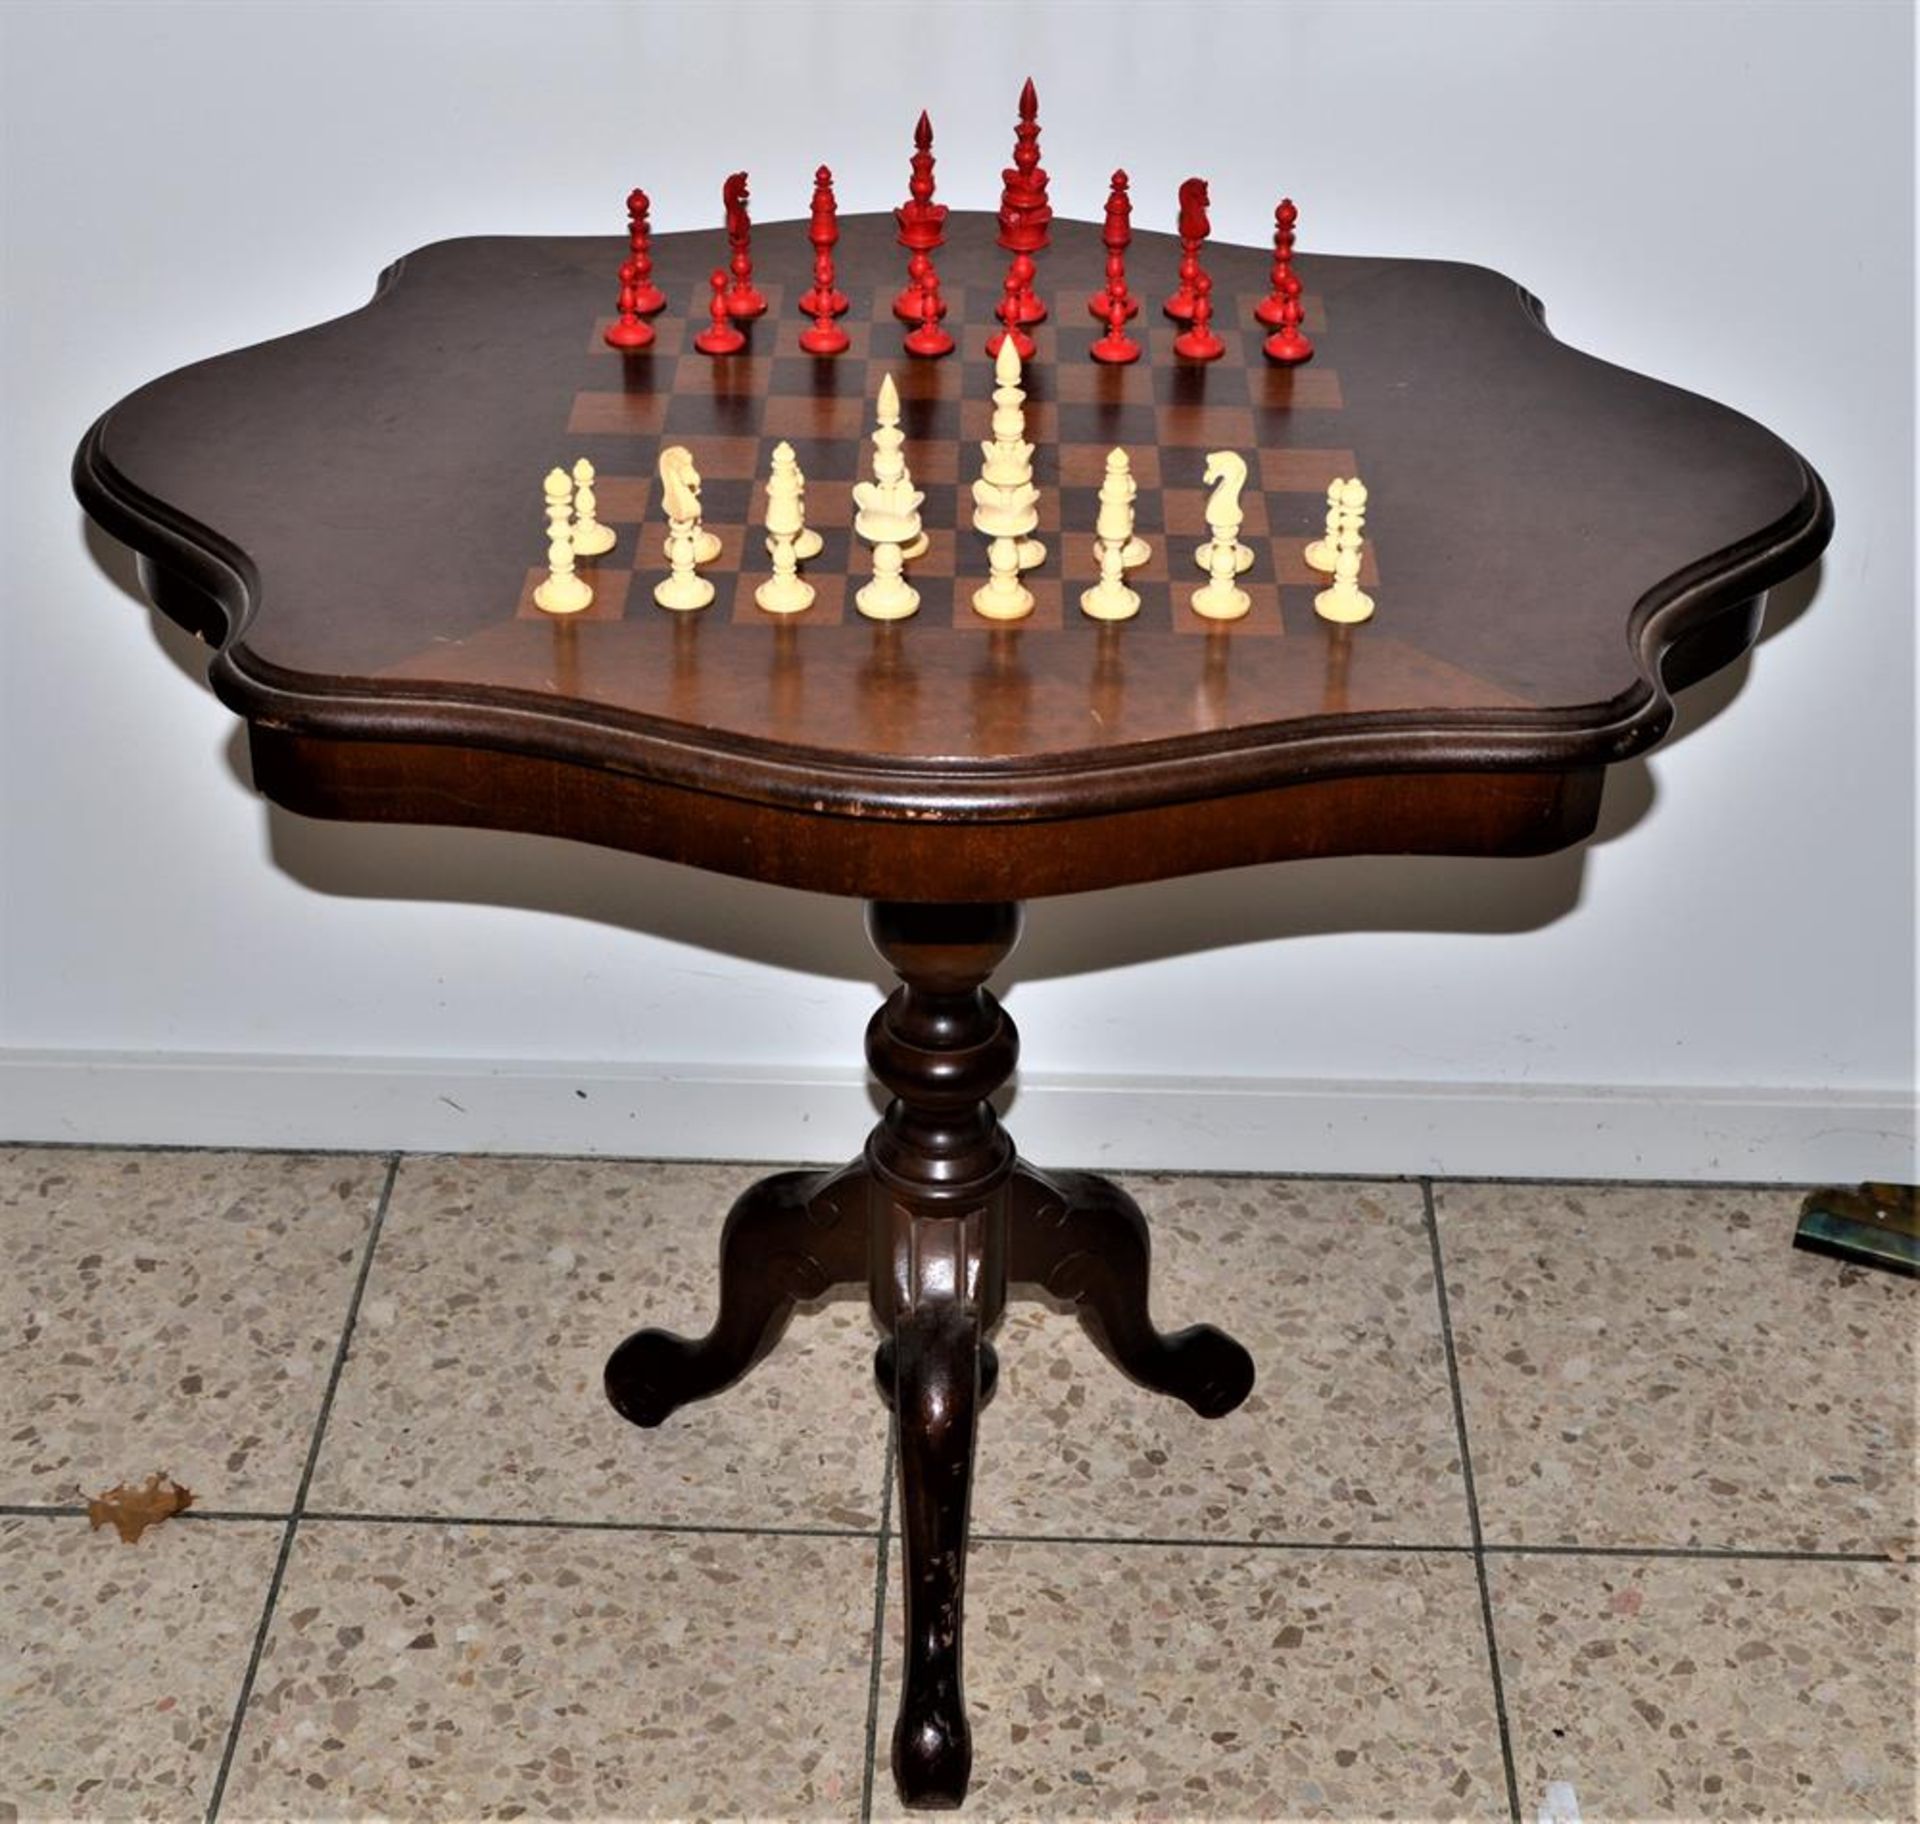 Schachtisch mit alten aus Bein geschnitzten Schachfiguren rot weiß Anfang 20 Jhdt, Spielanleitung